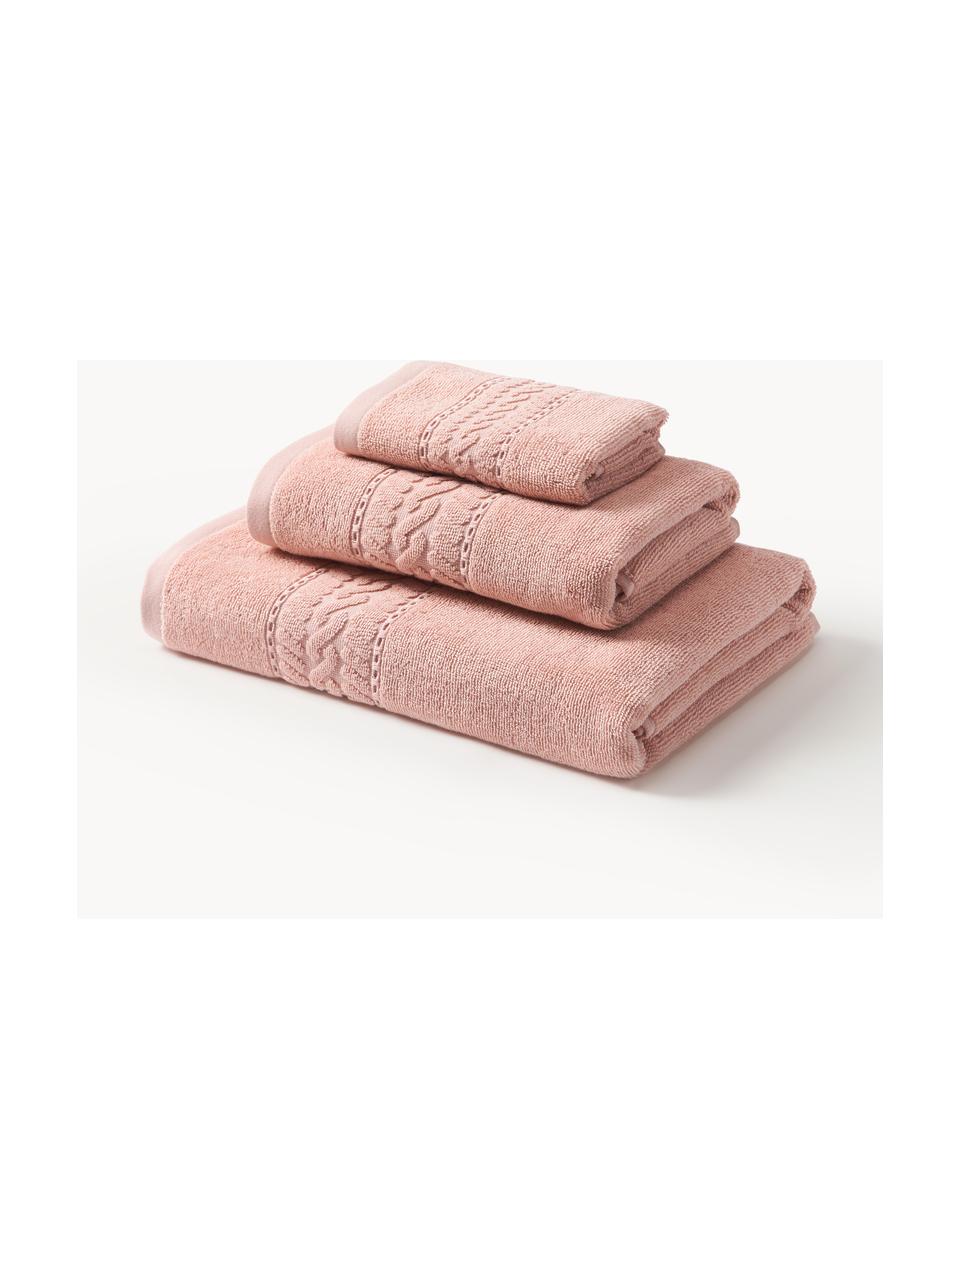 Súprava uterákov Cordelia, 3 diely, Broskyňová, 3-dielna súprava (uterák pre hostí, uterák na ruky, osuška)